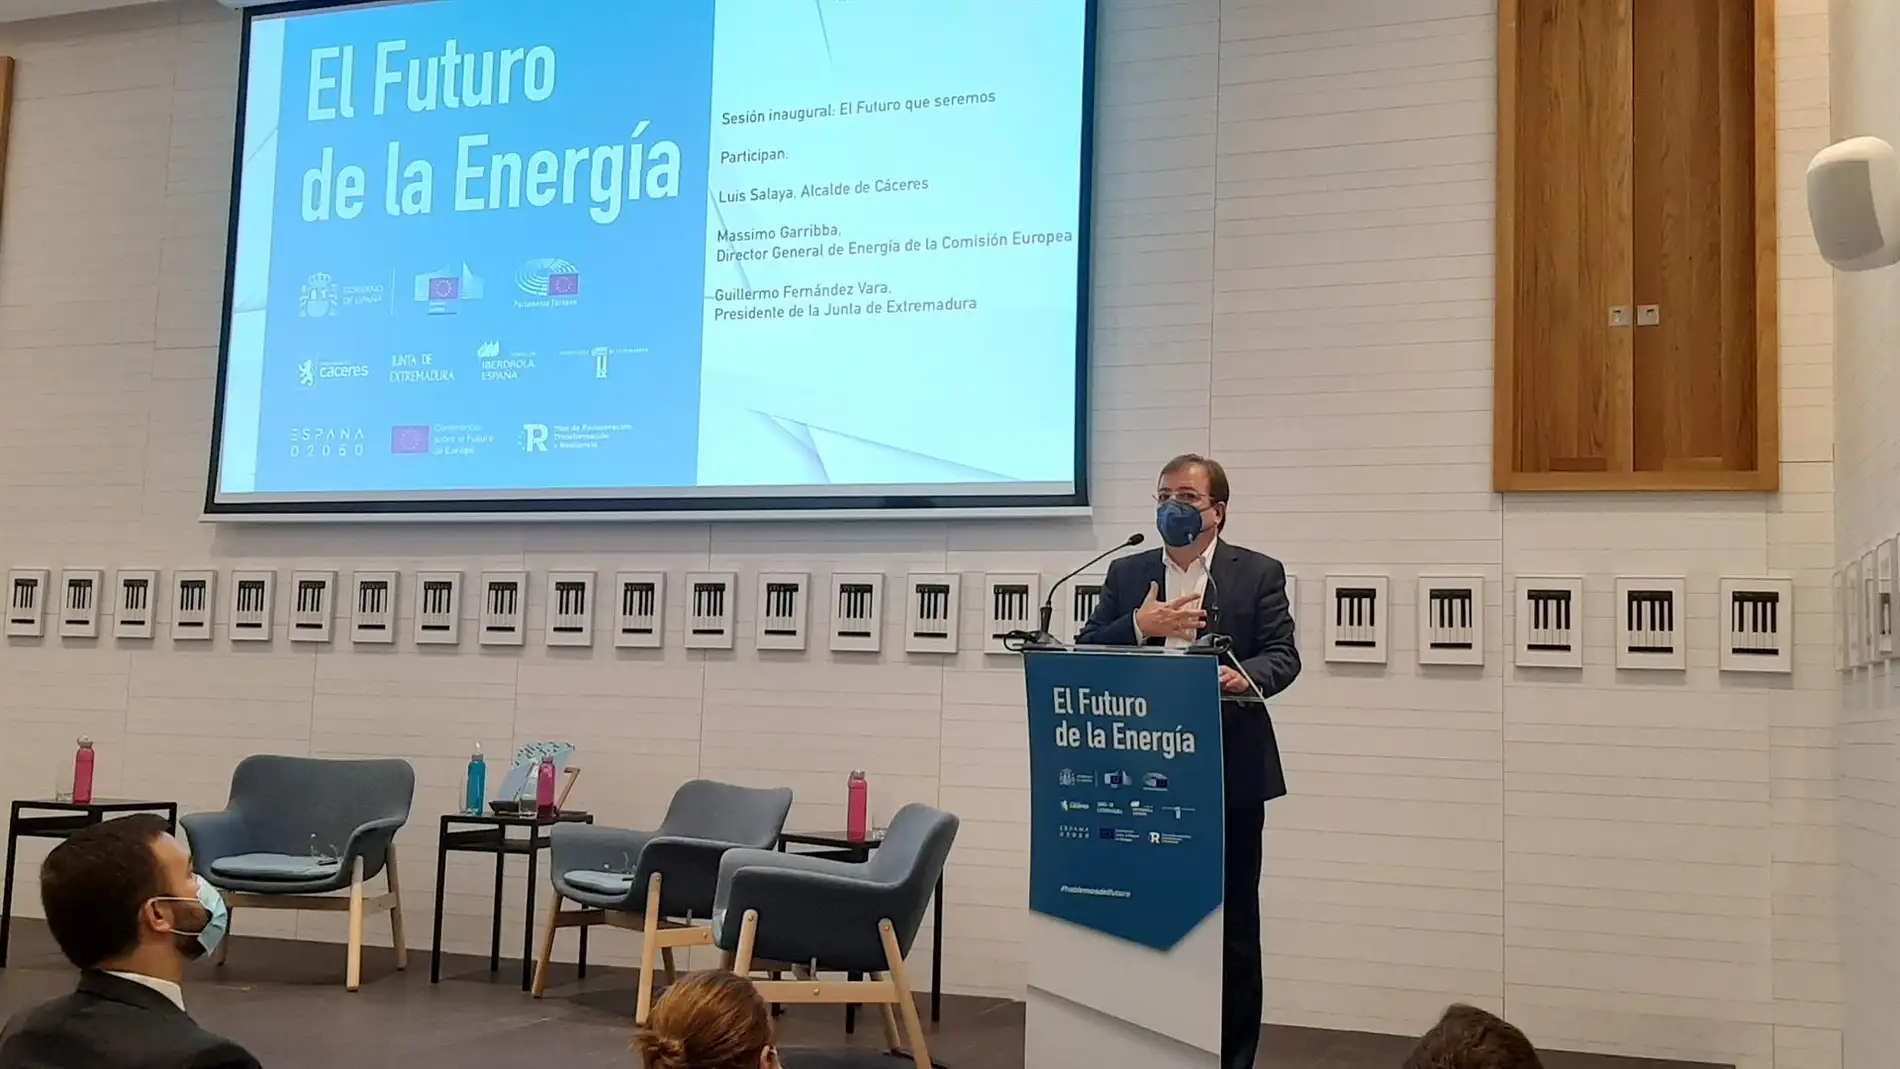 Expertos, empresas e instituciones debaten en Cáceres sobre el futuro de la energía en la era post-Covid